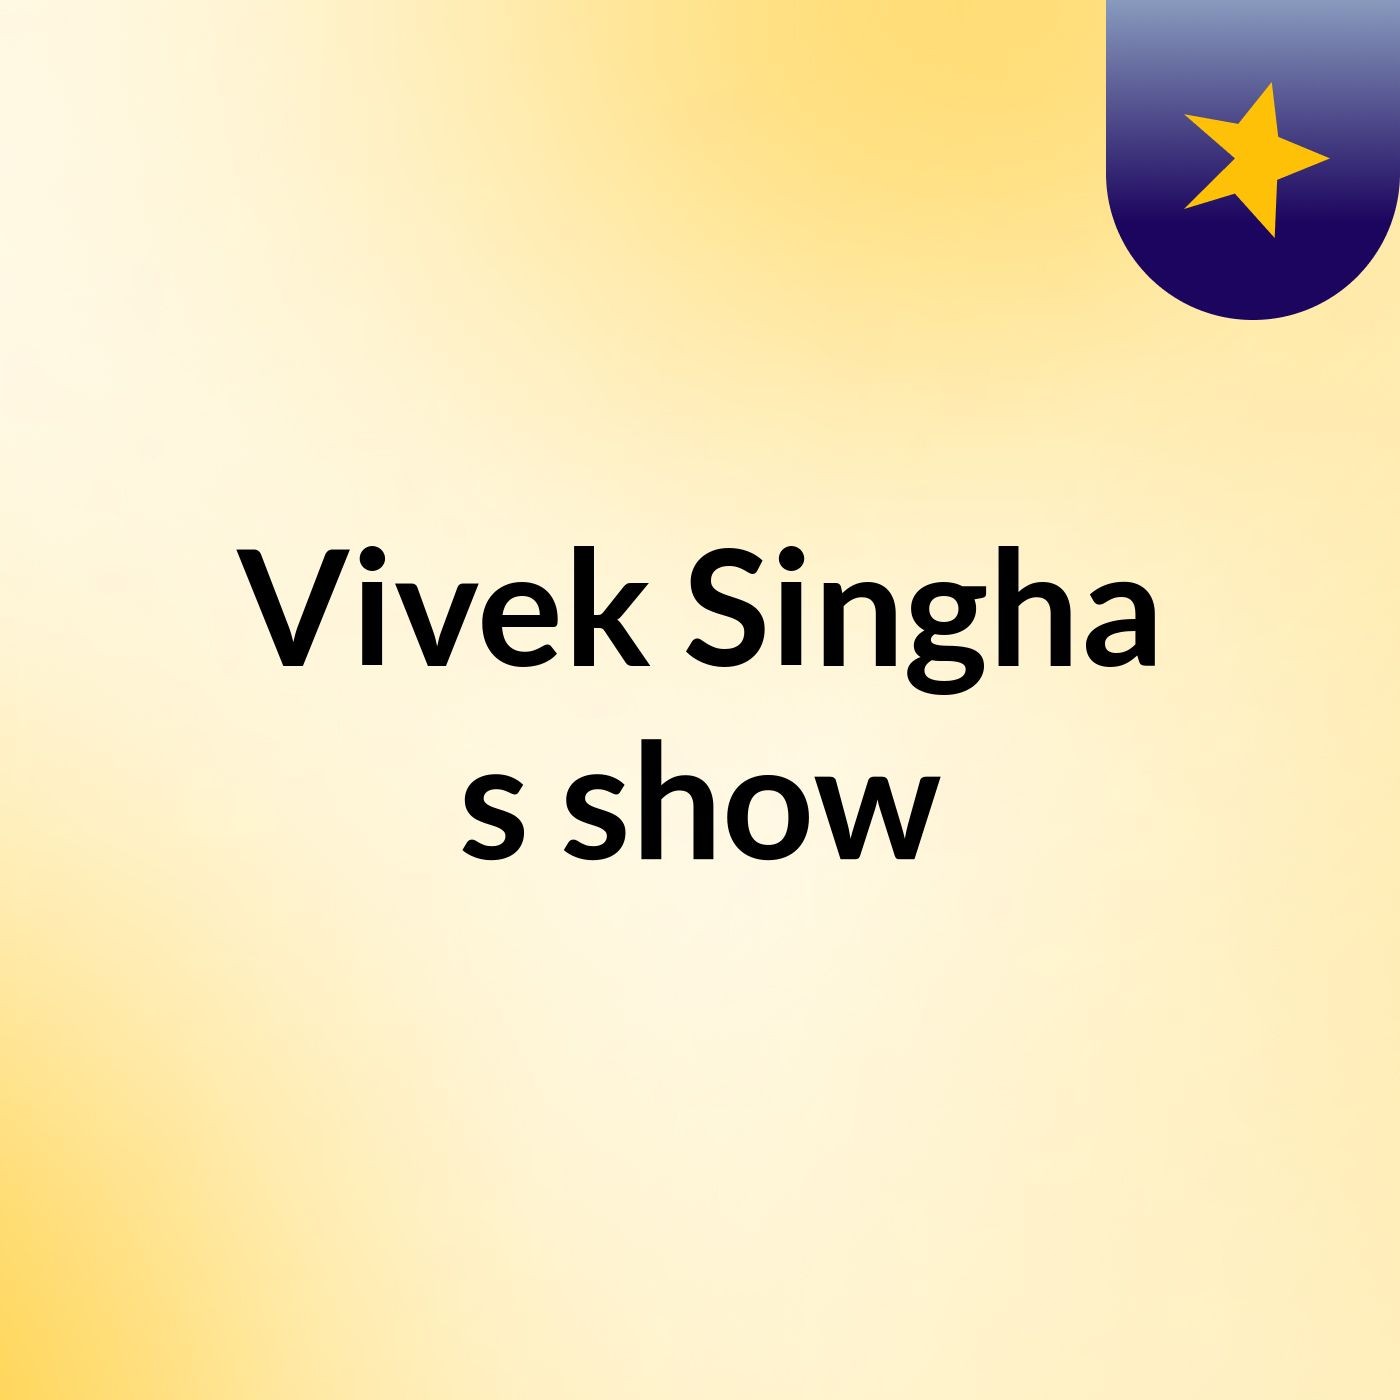 Vivek Singha's show